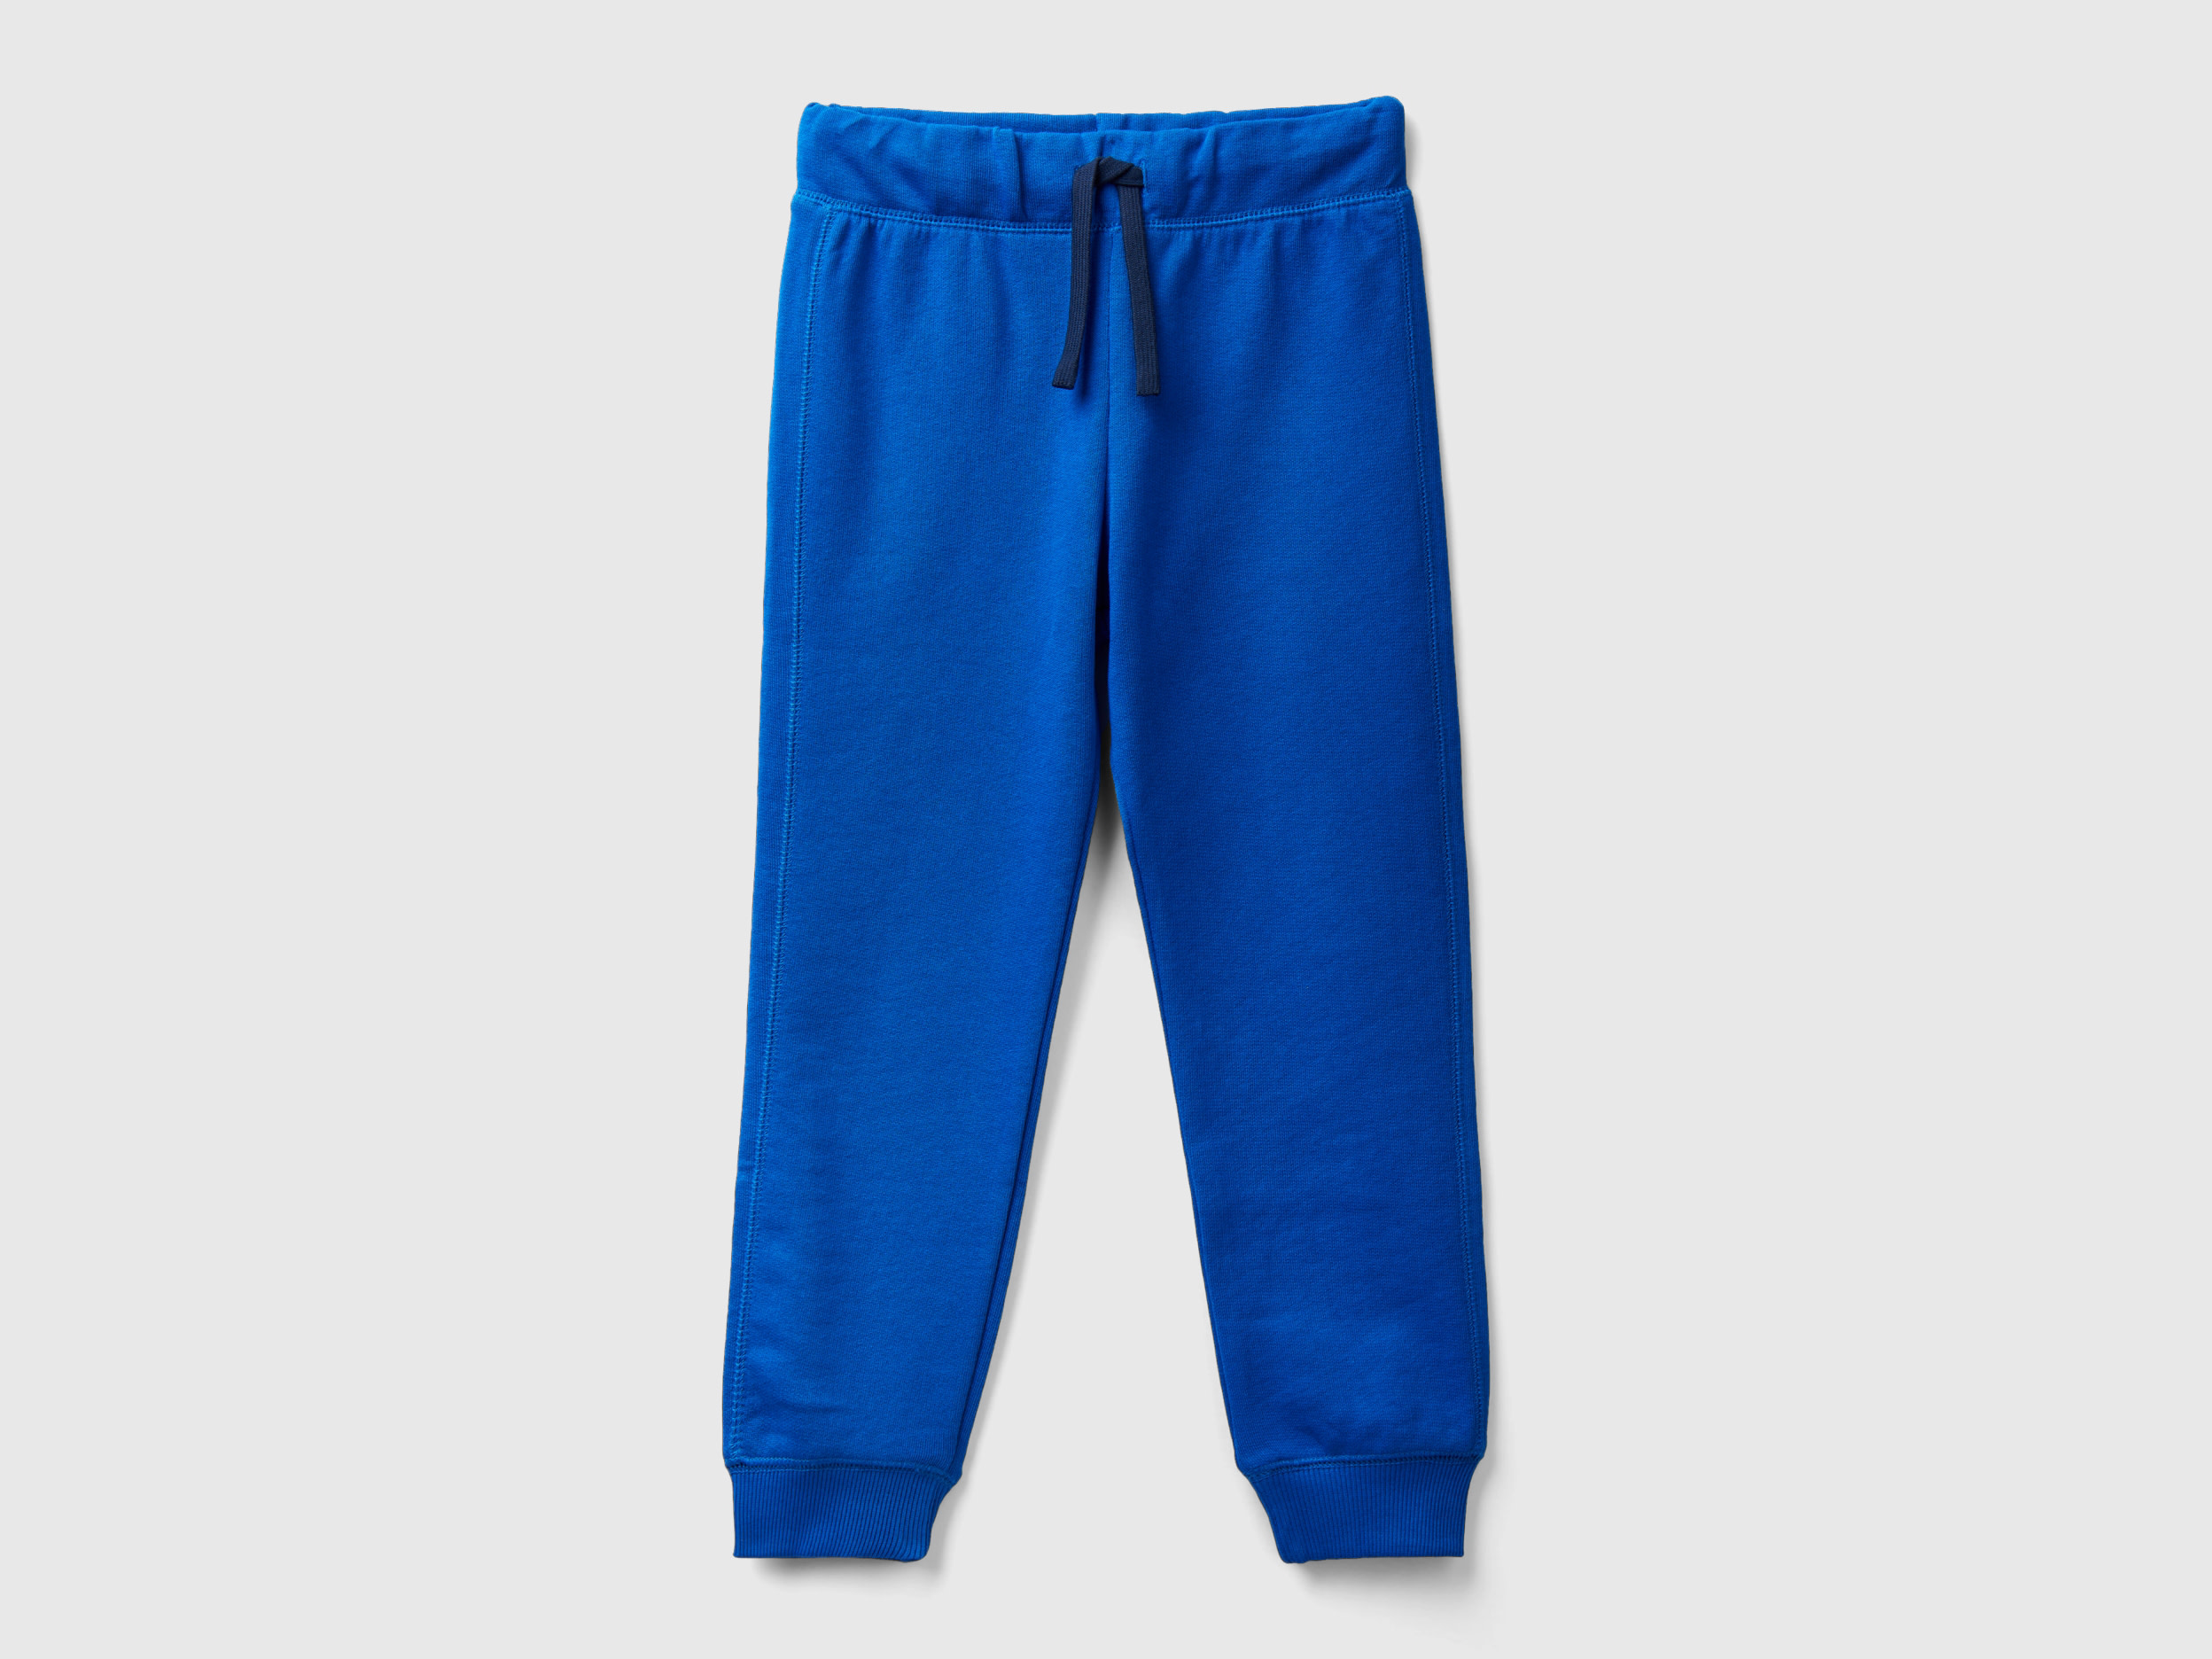 Benetton, 100% Cotton Sweatpants, size 2XL, Bright Blue, Kids